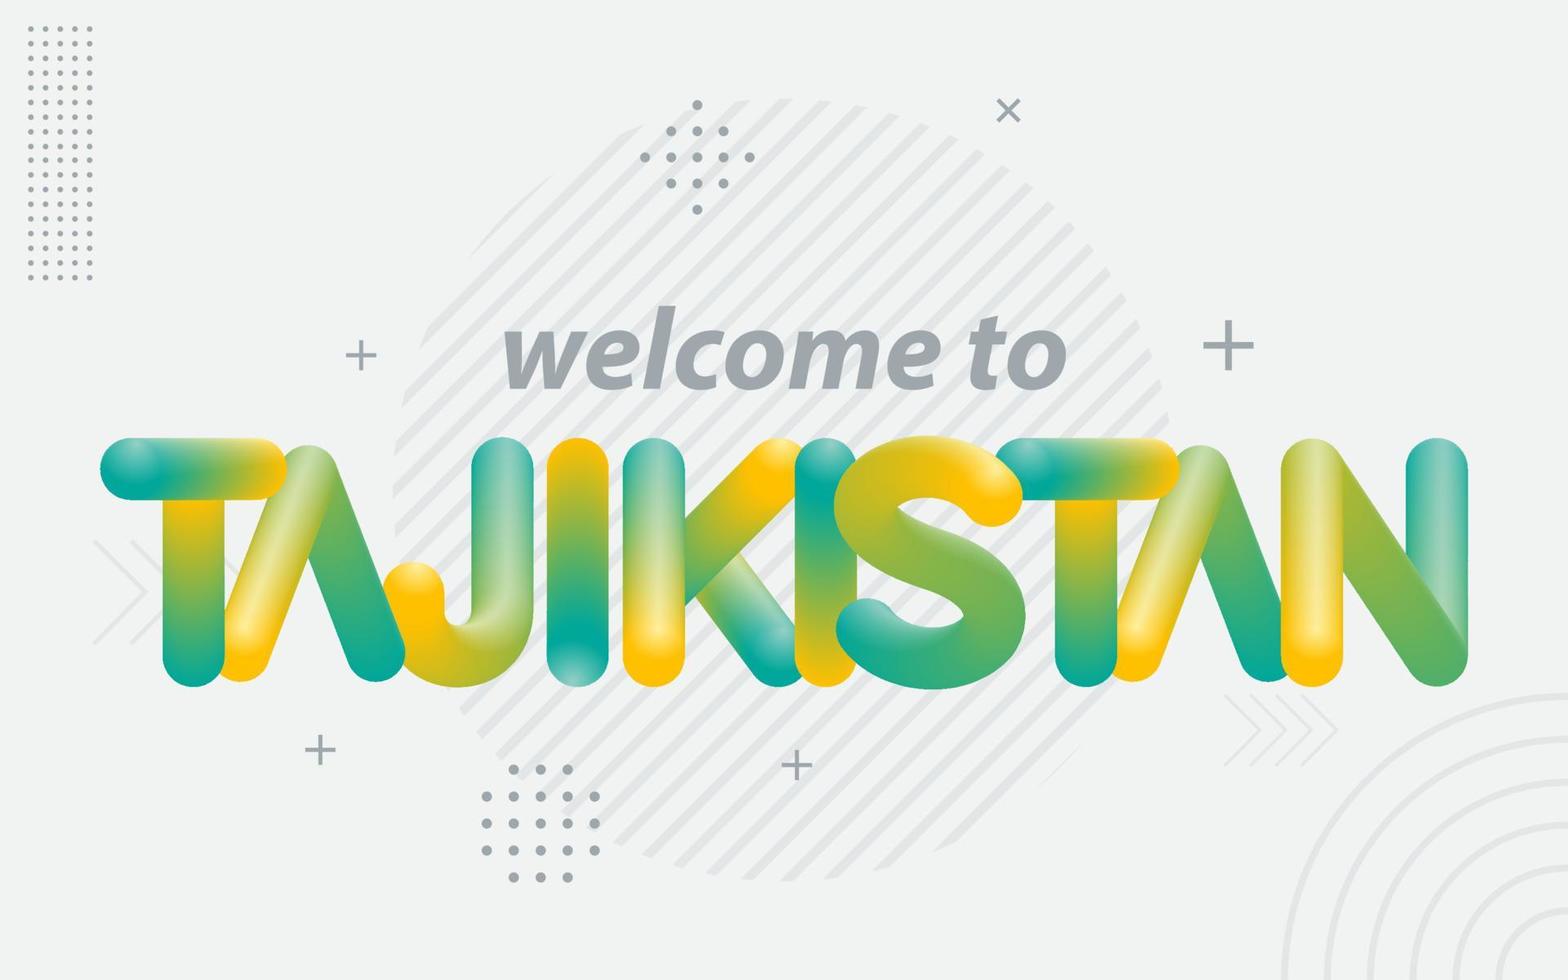 bem-vindo ao tadjiquistão. tipografia criativa com efeito de mistura 3d vetor